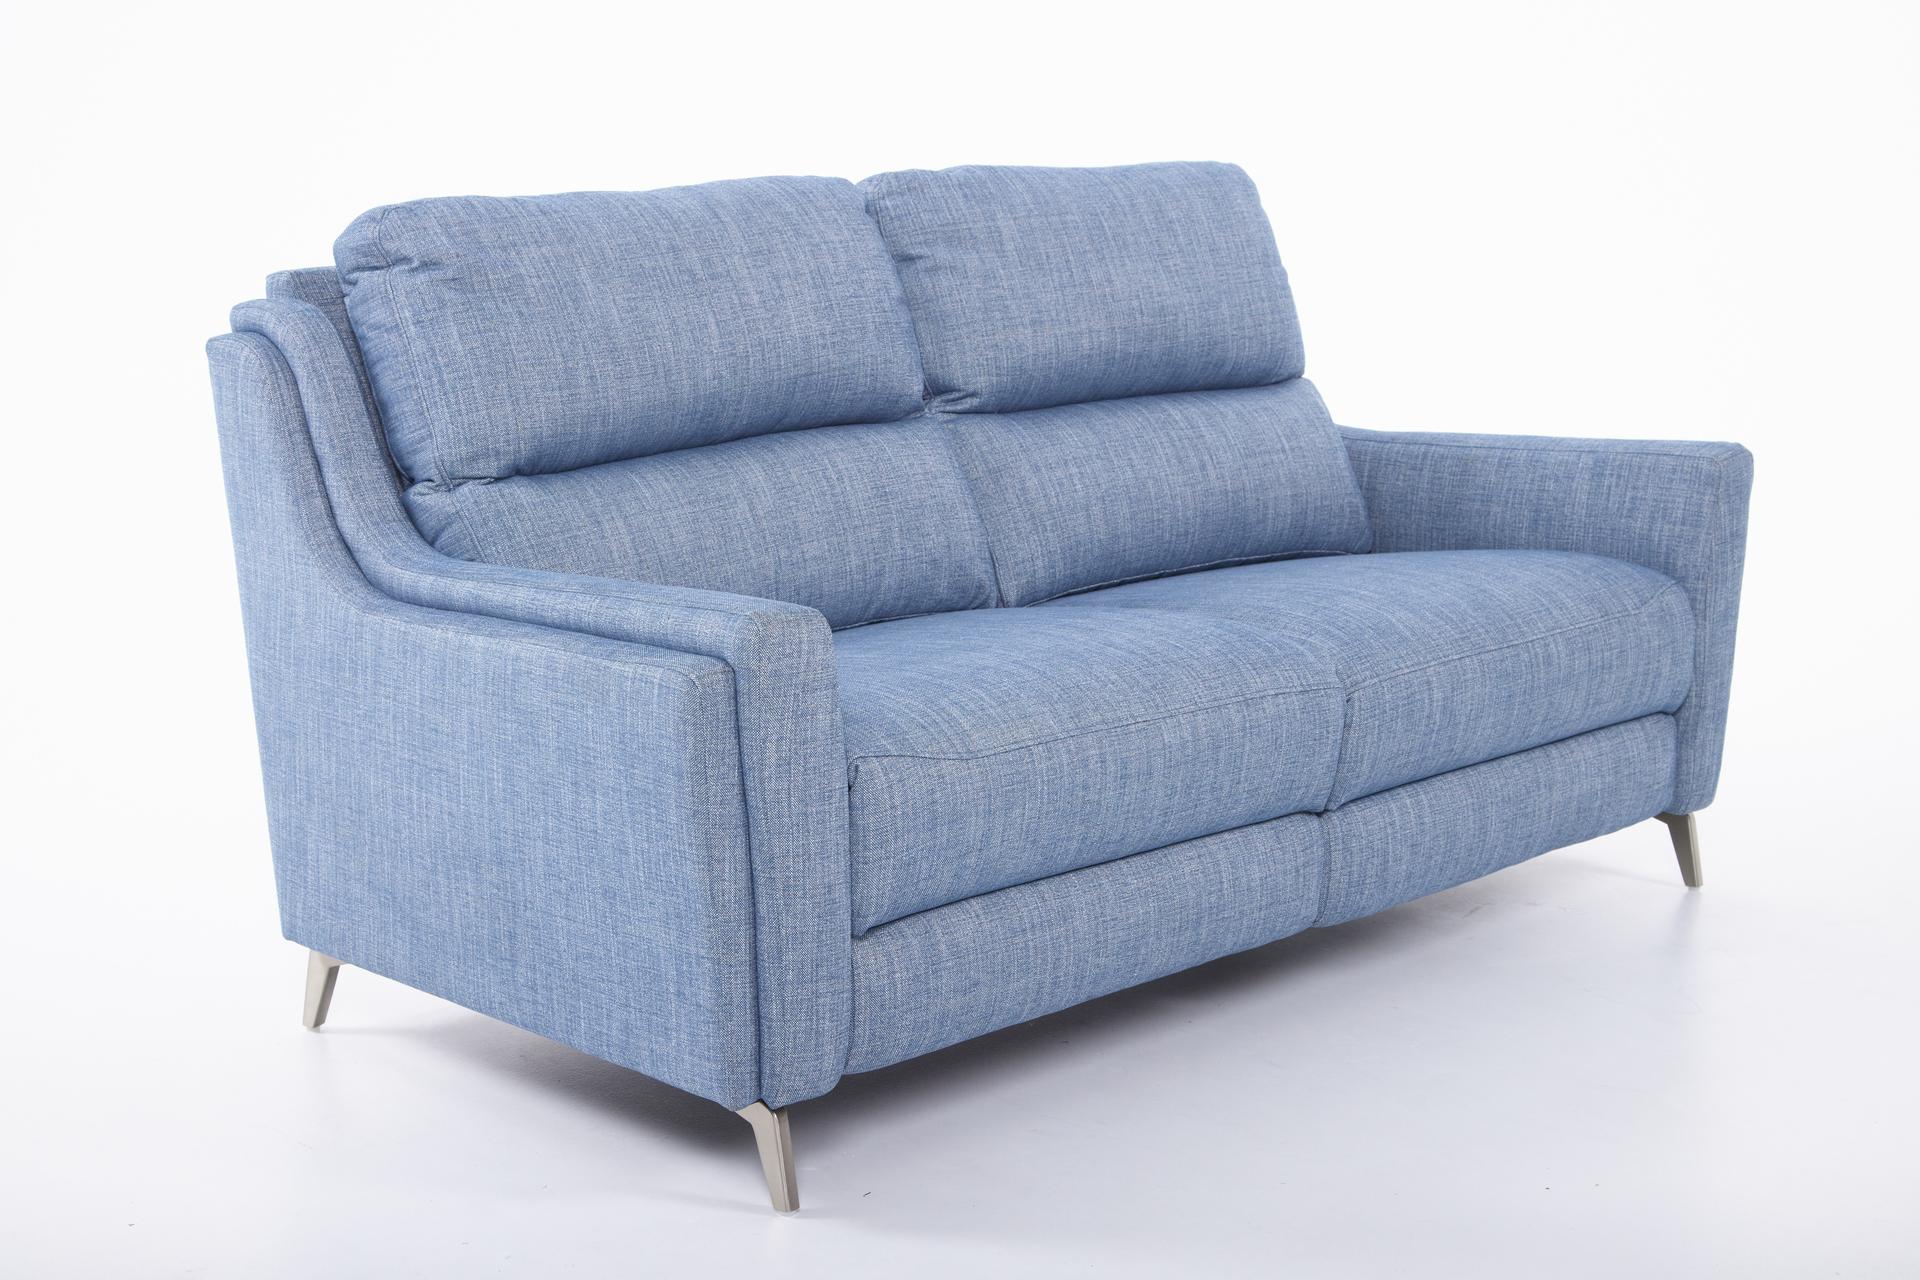 Portland Large 2 Seater Fabric Sofa